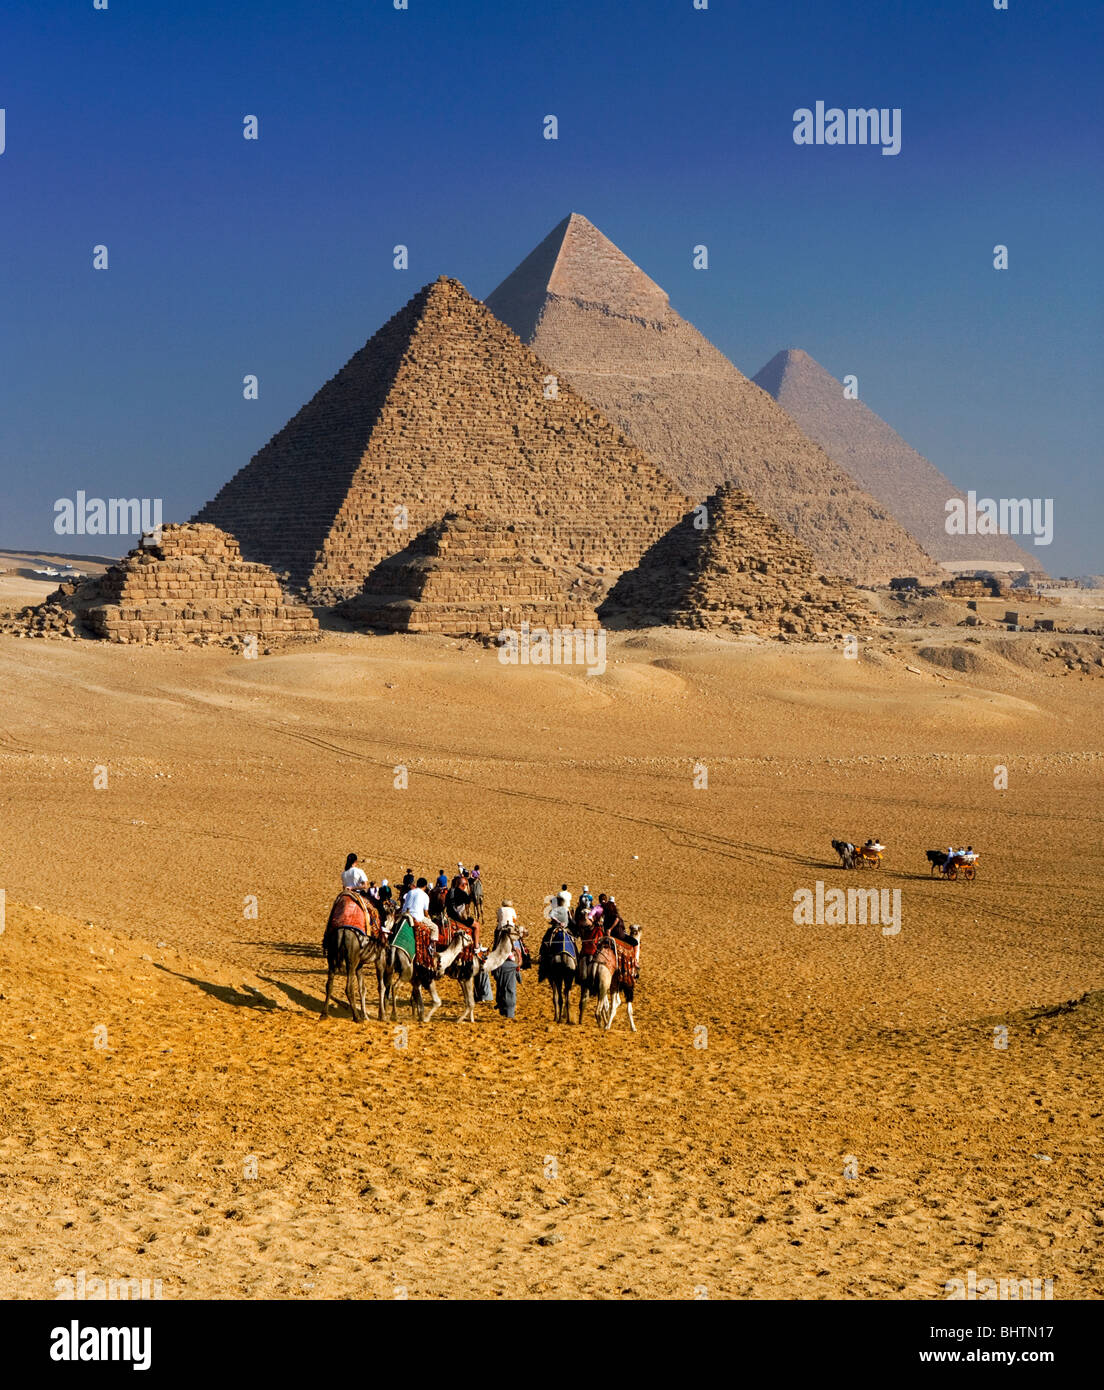 Los turistas montar camellos en las Pirámides de Giza, en El Cairo, Egipto. Foto de stock